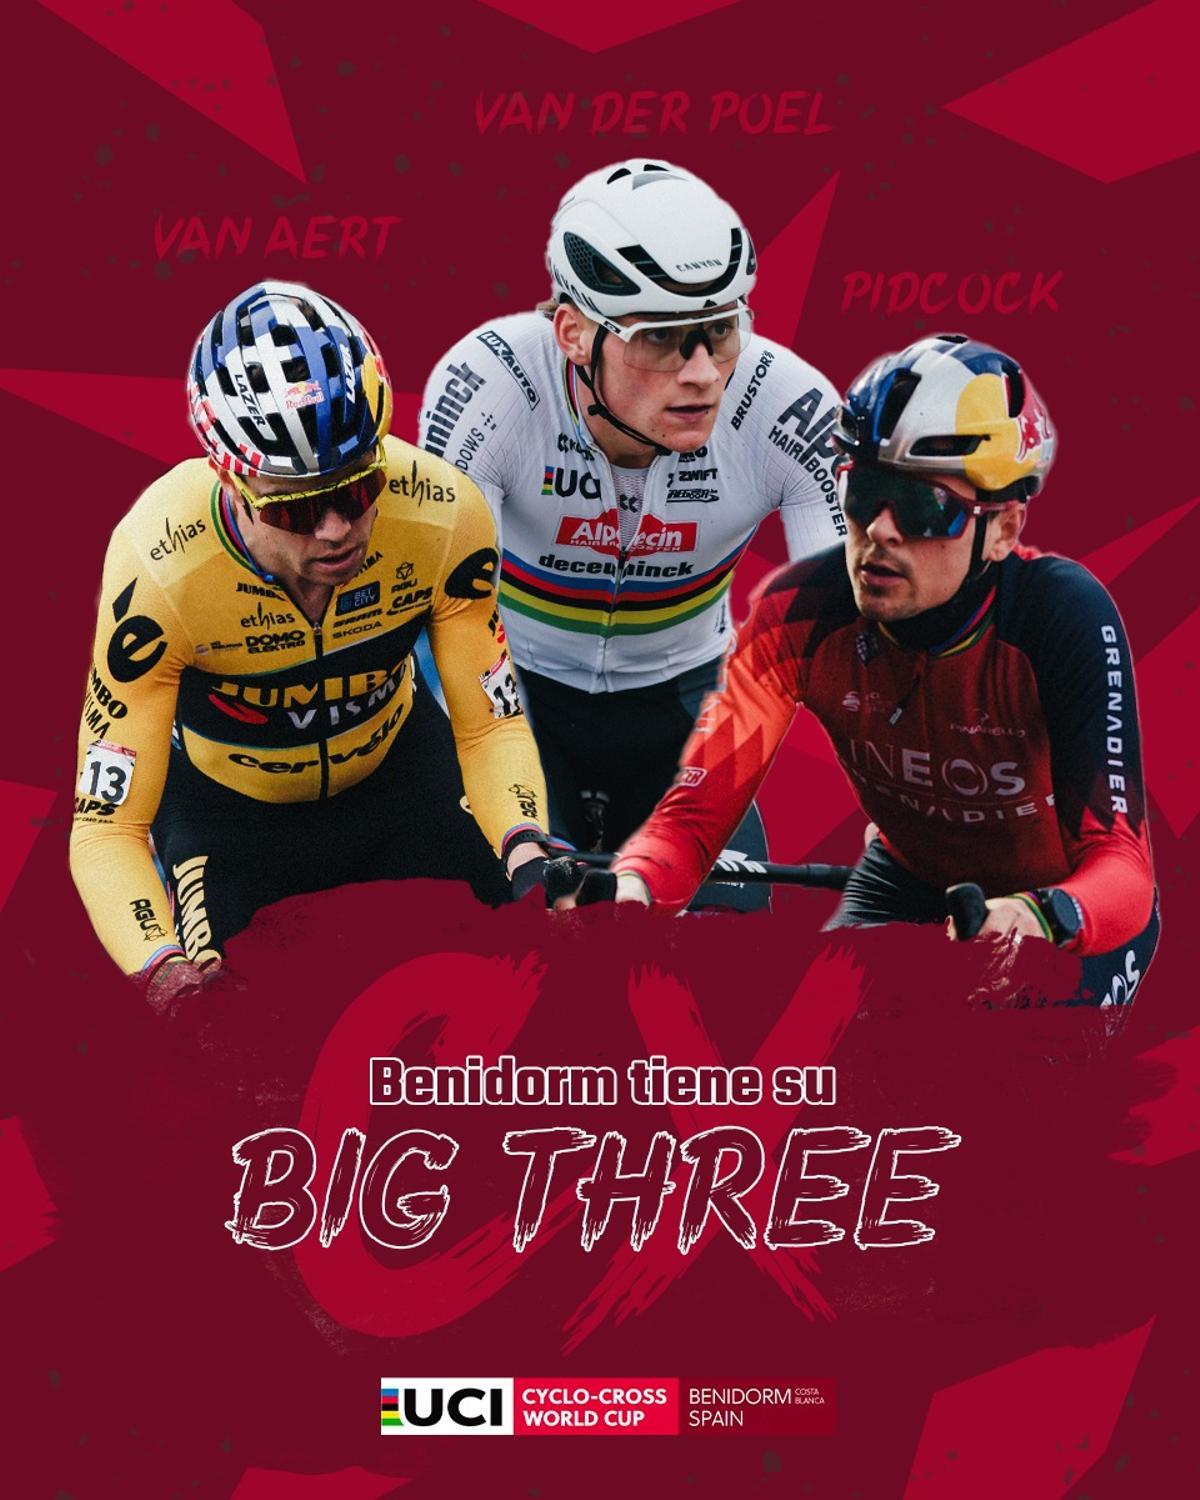 Mathieu Van der Poel, Wout van Aert y Tom Pidcock, el 'Big Three' del ciclocross mundial, se medirá por última vez en la presente campaña invernal el domingo 21 de enero en la Copa del Mundo de Ciclocross UCI – Benidorm Costa Blanca.